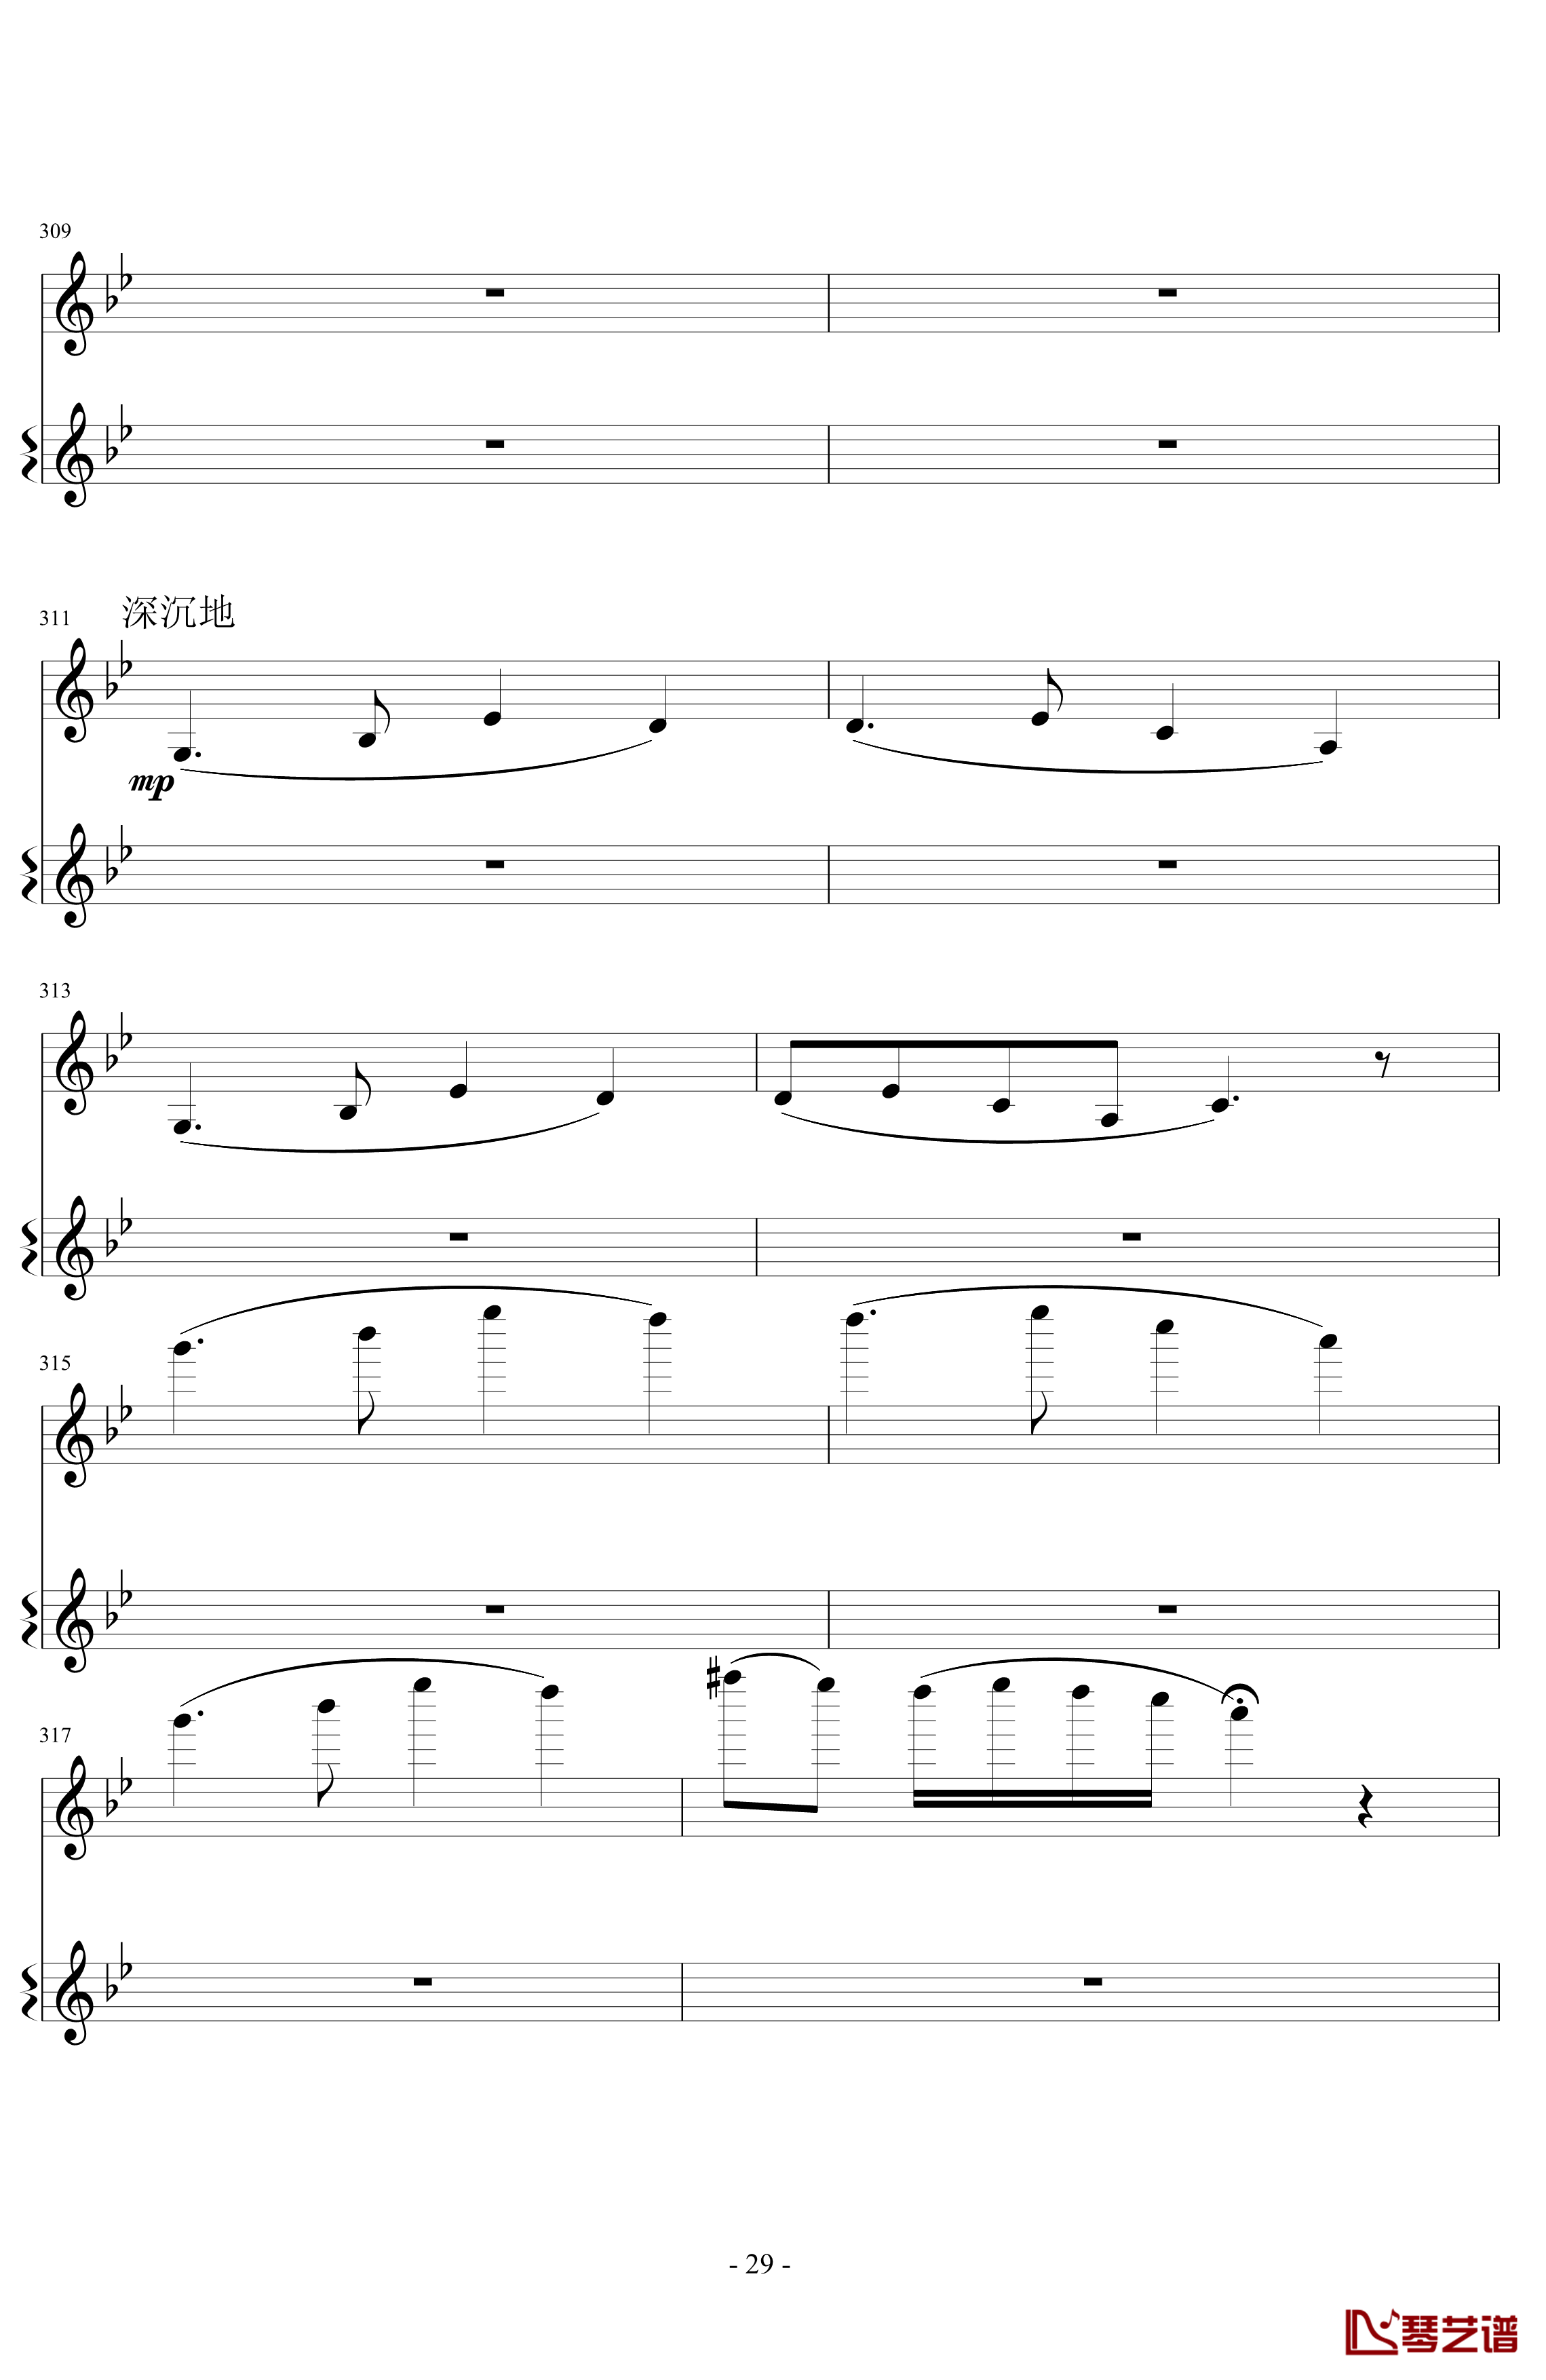 意大利国歌变奏曲钢琴谱-DXF29